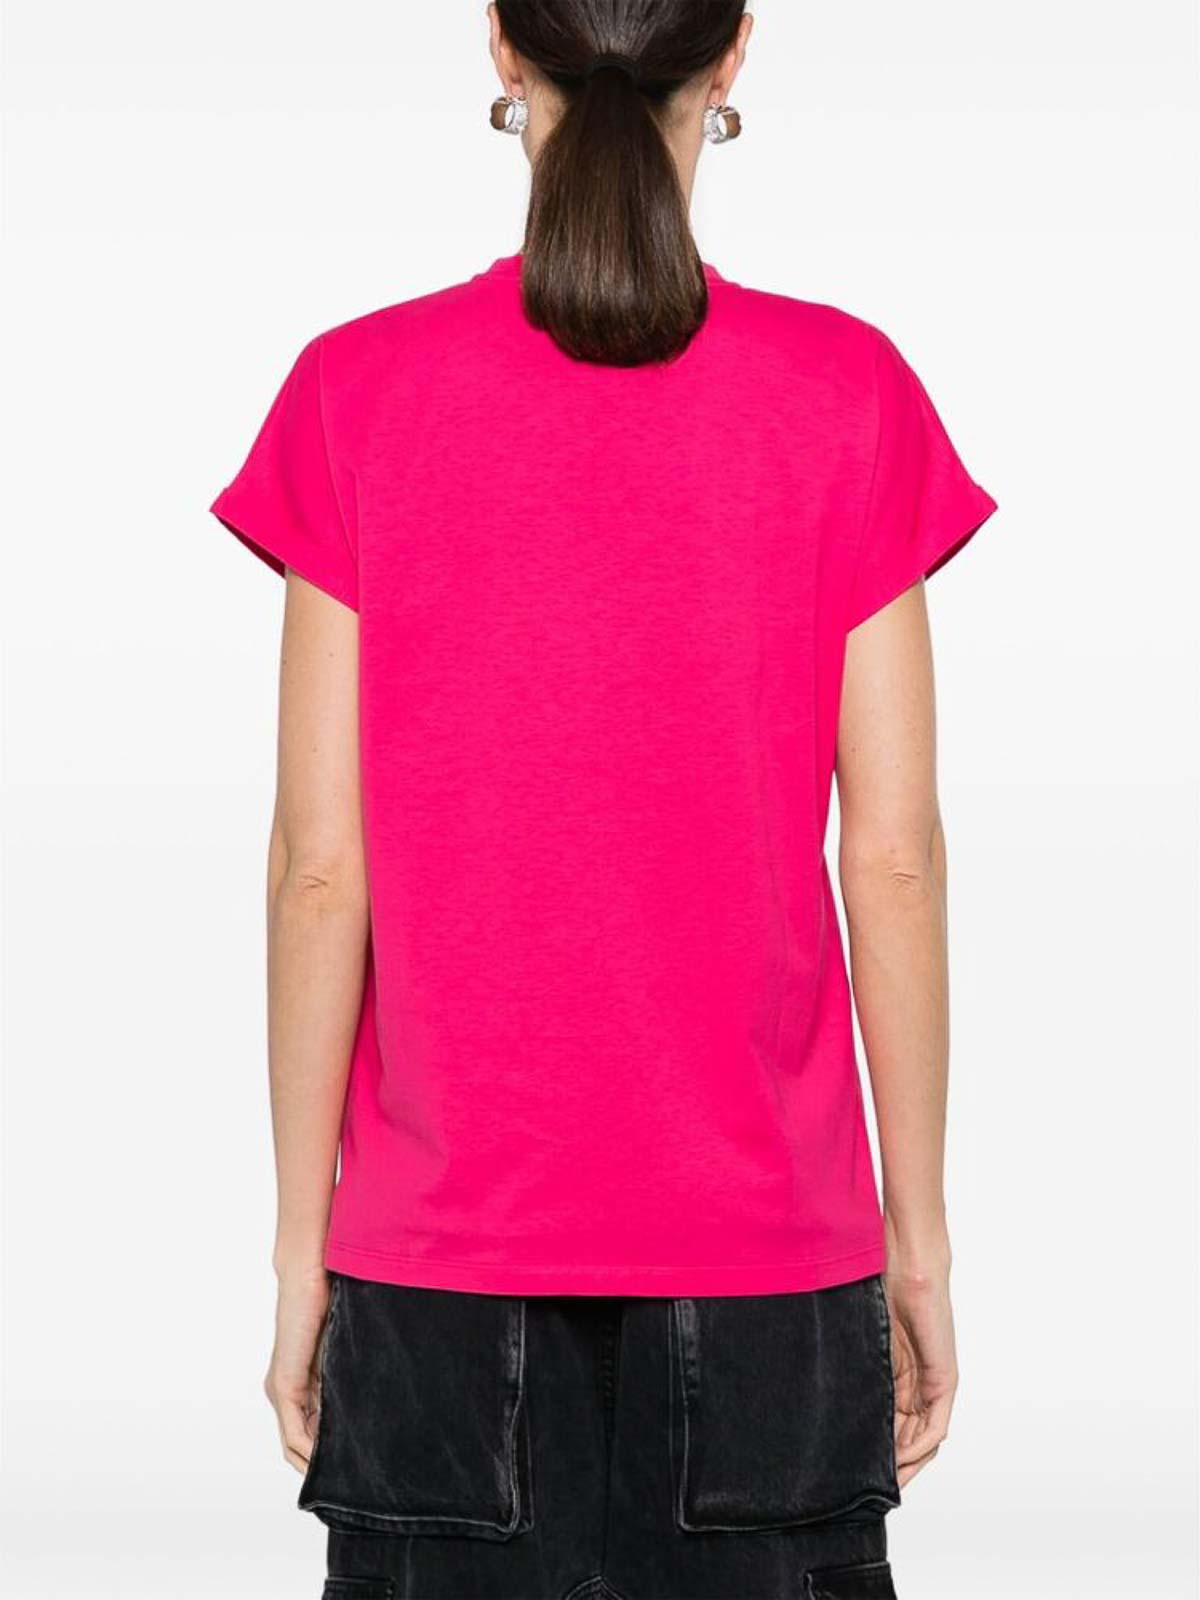 Shop Balmain Camiseta - Color Carne Y Neutral In Nude & Neutrals